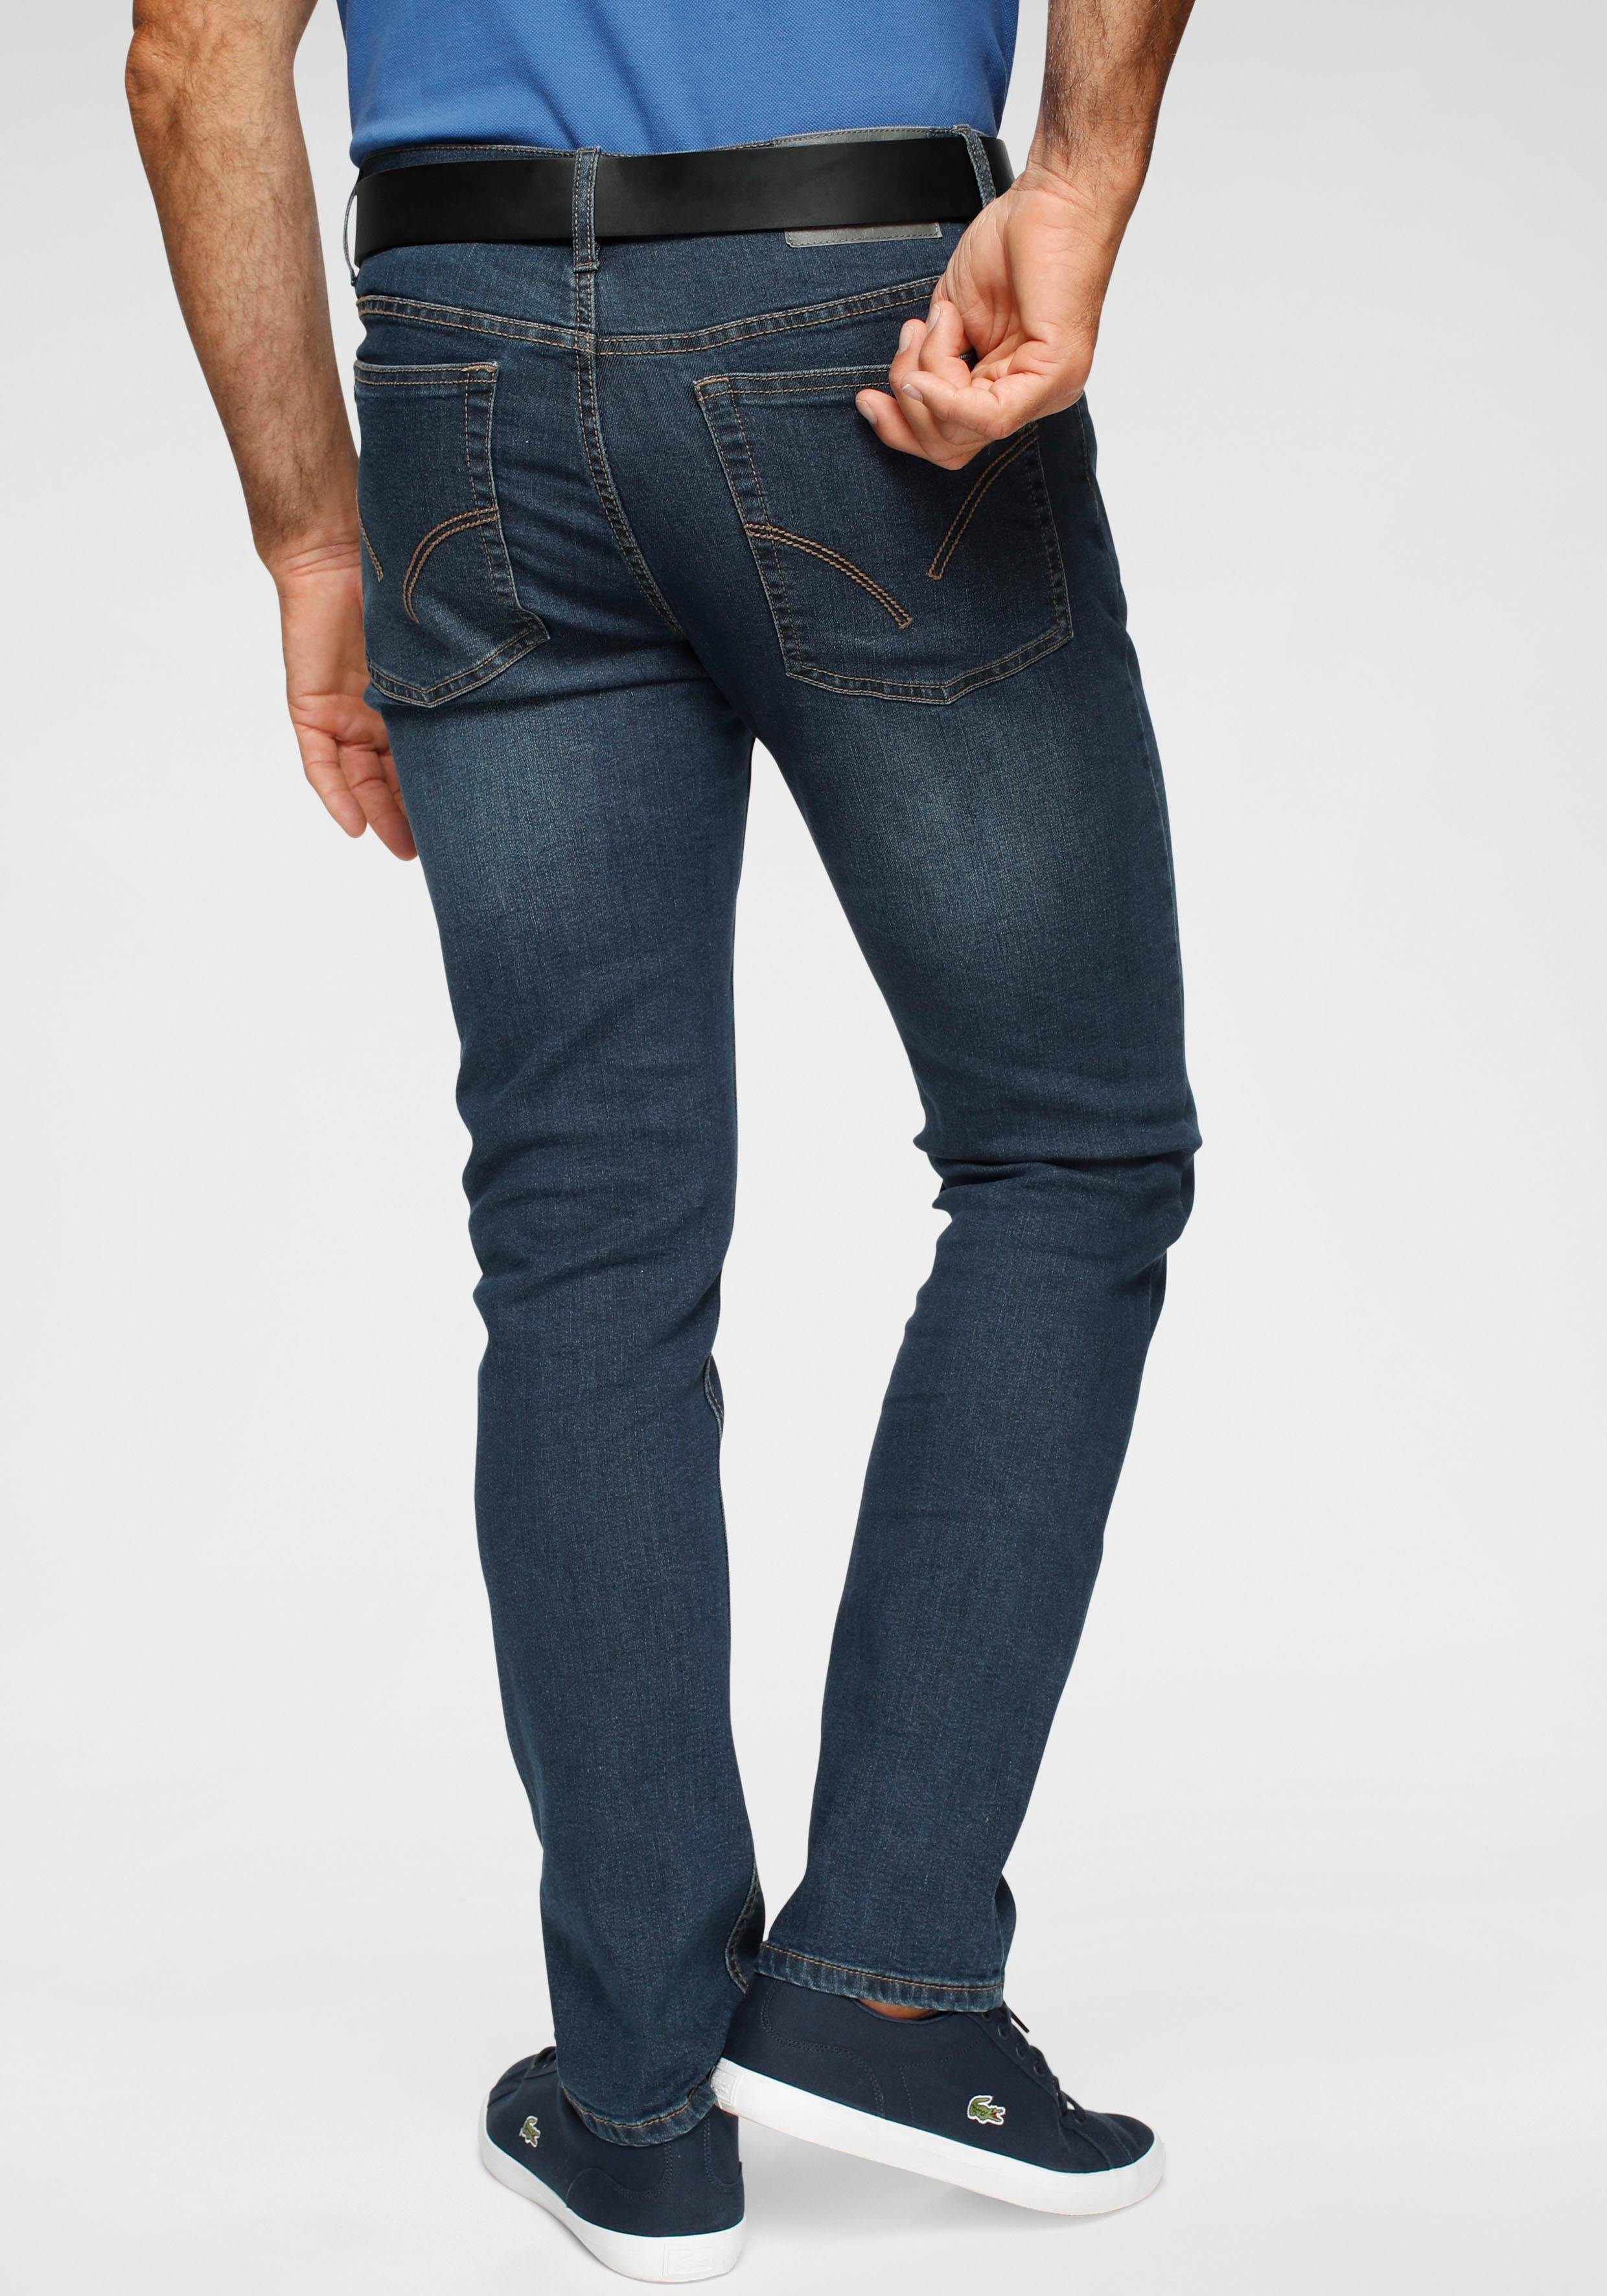 Guess Denim 28 L in het Blauw voor heren Heren Kleding voor voor Jeans voor Tapered jeans 